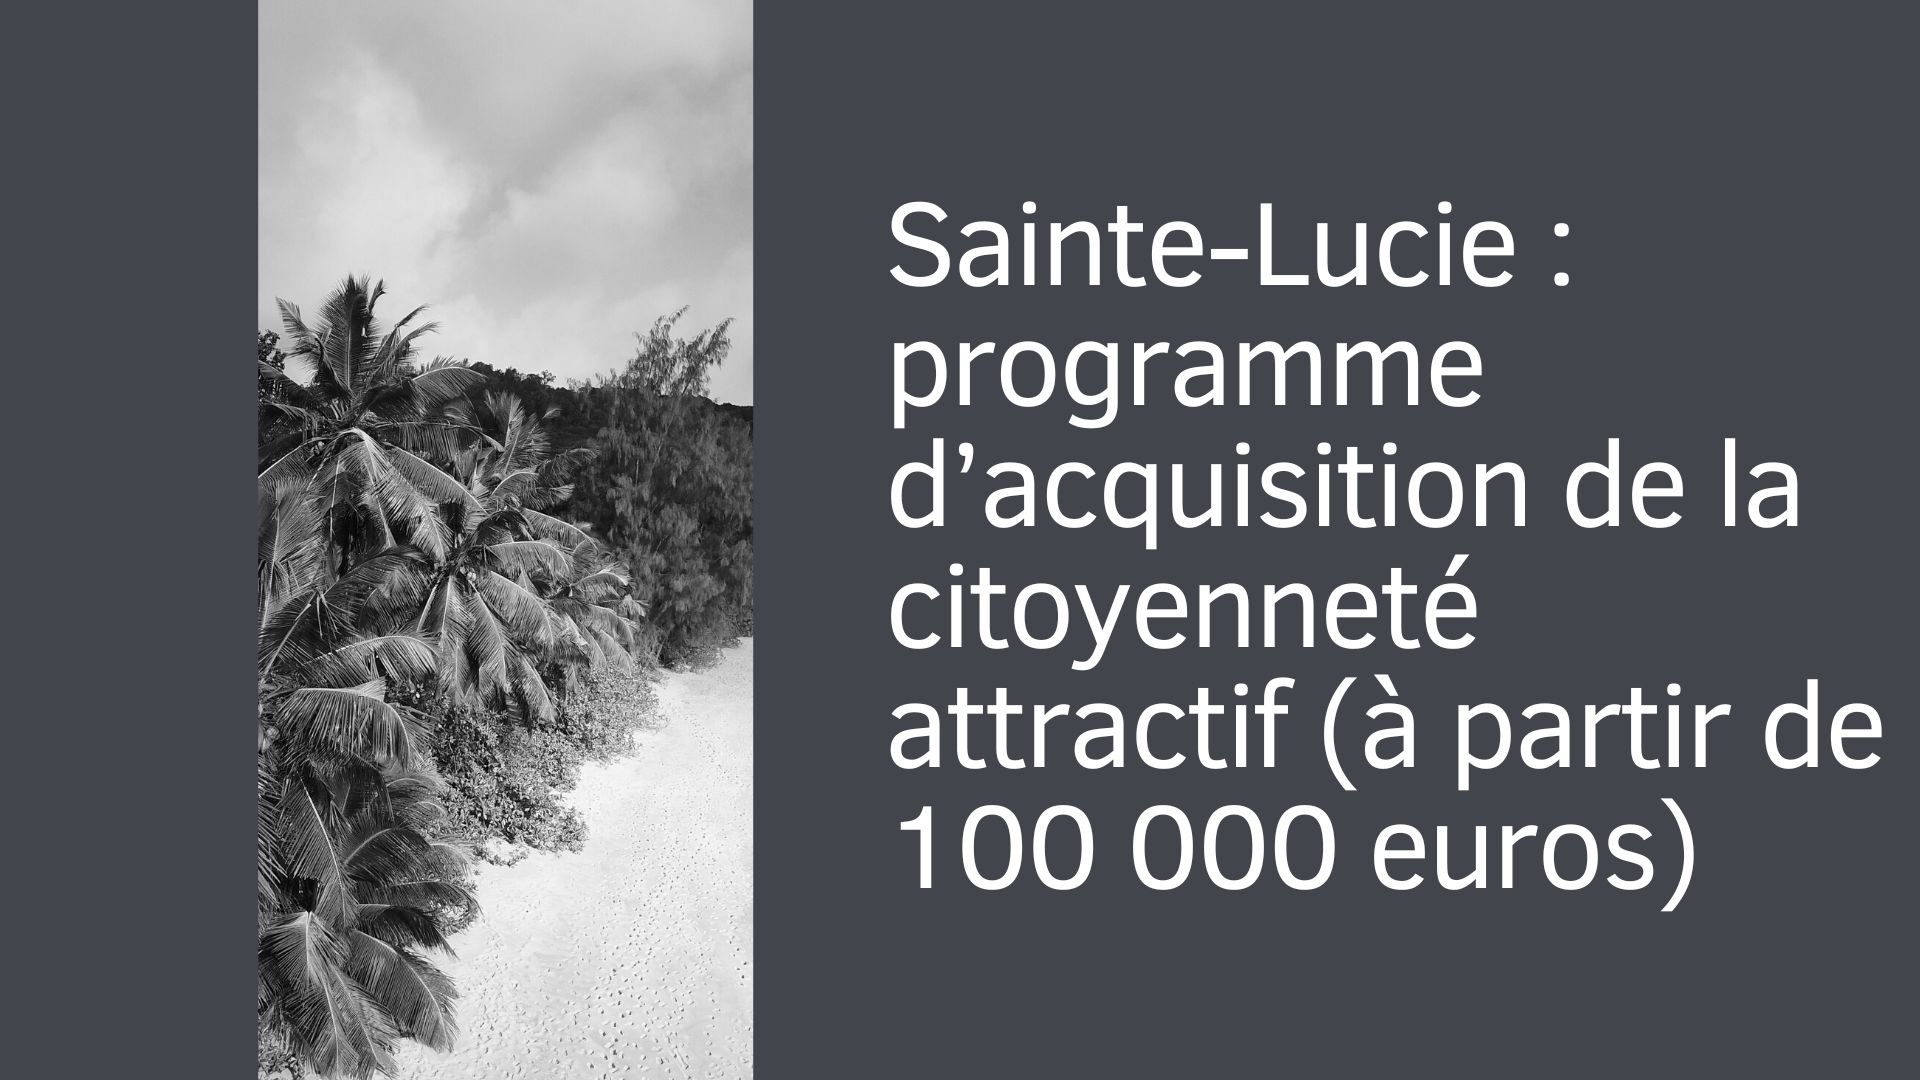 Sainte-Lucie : programme d’acquisition de la citoyenneté attractif (à partir de 100 000 euros)